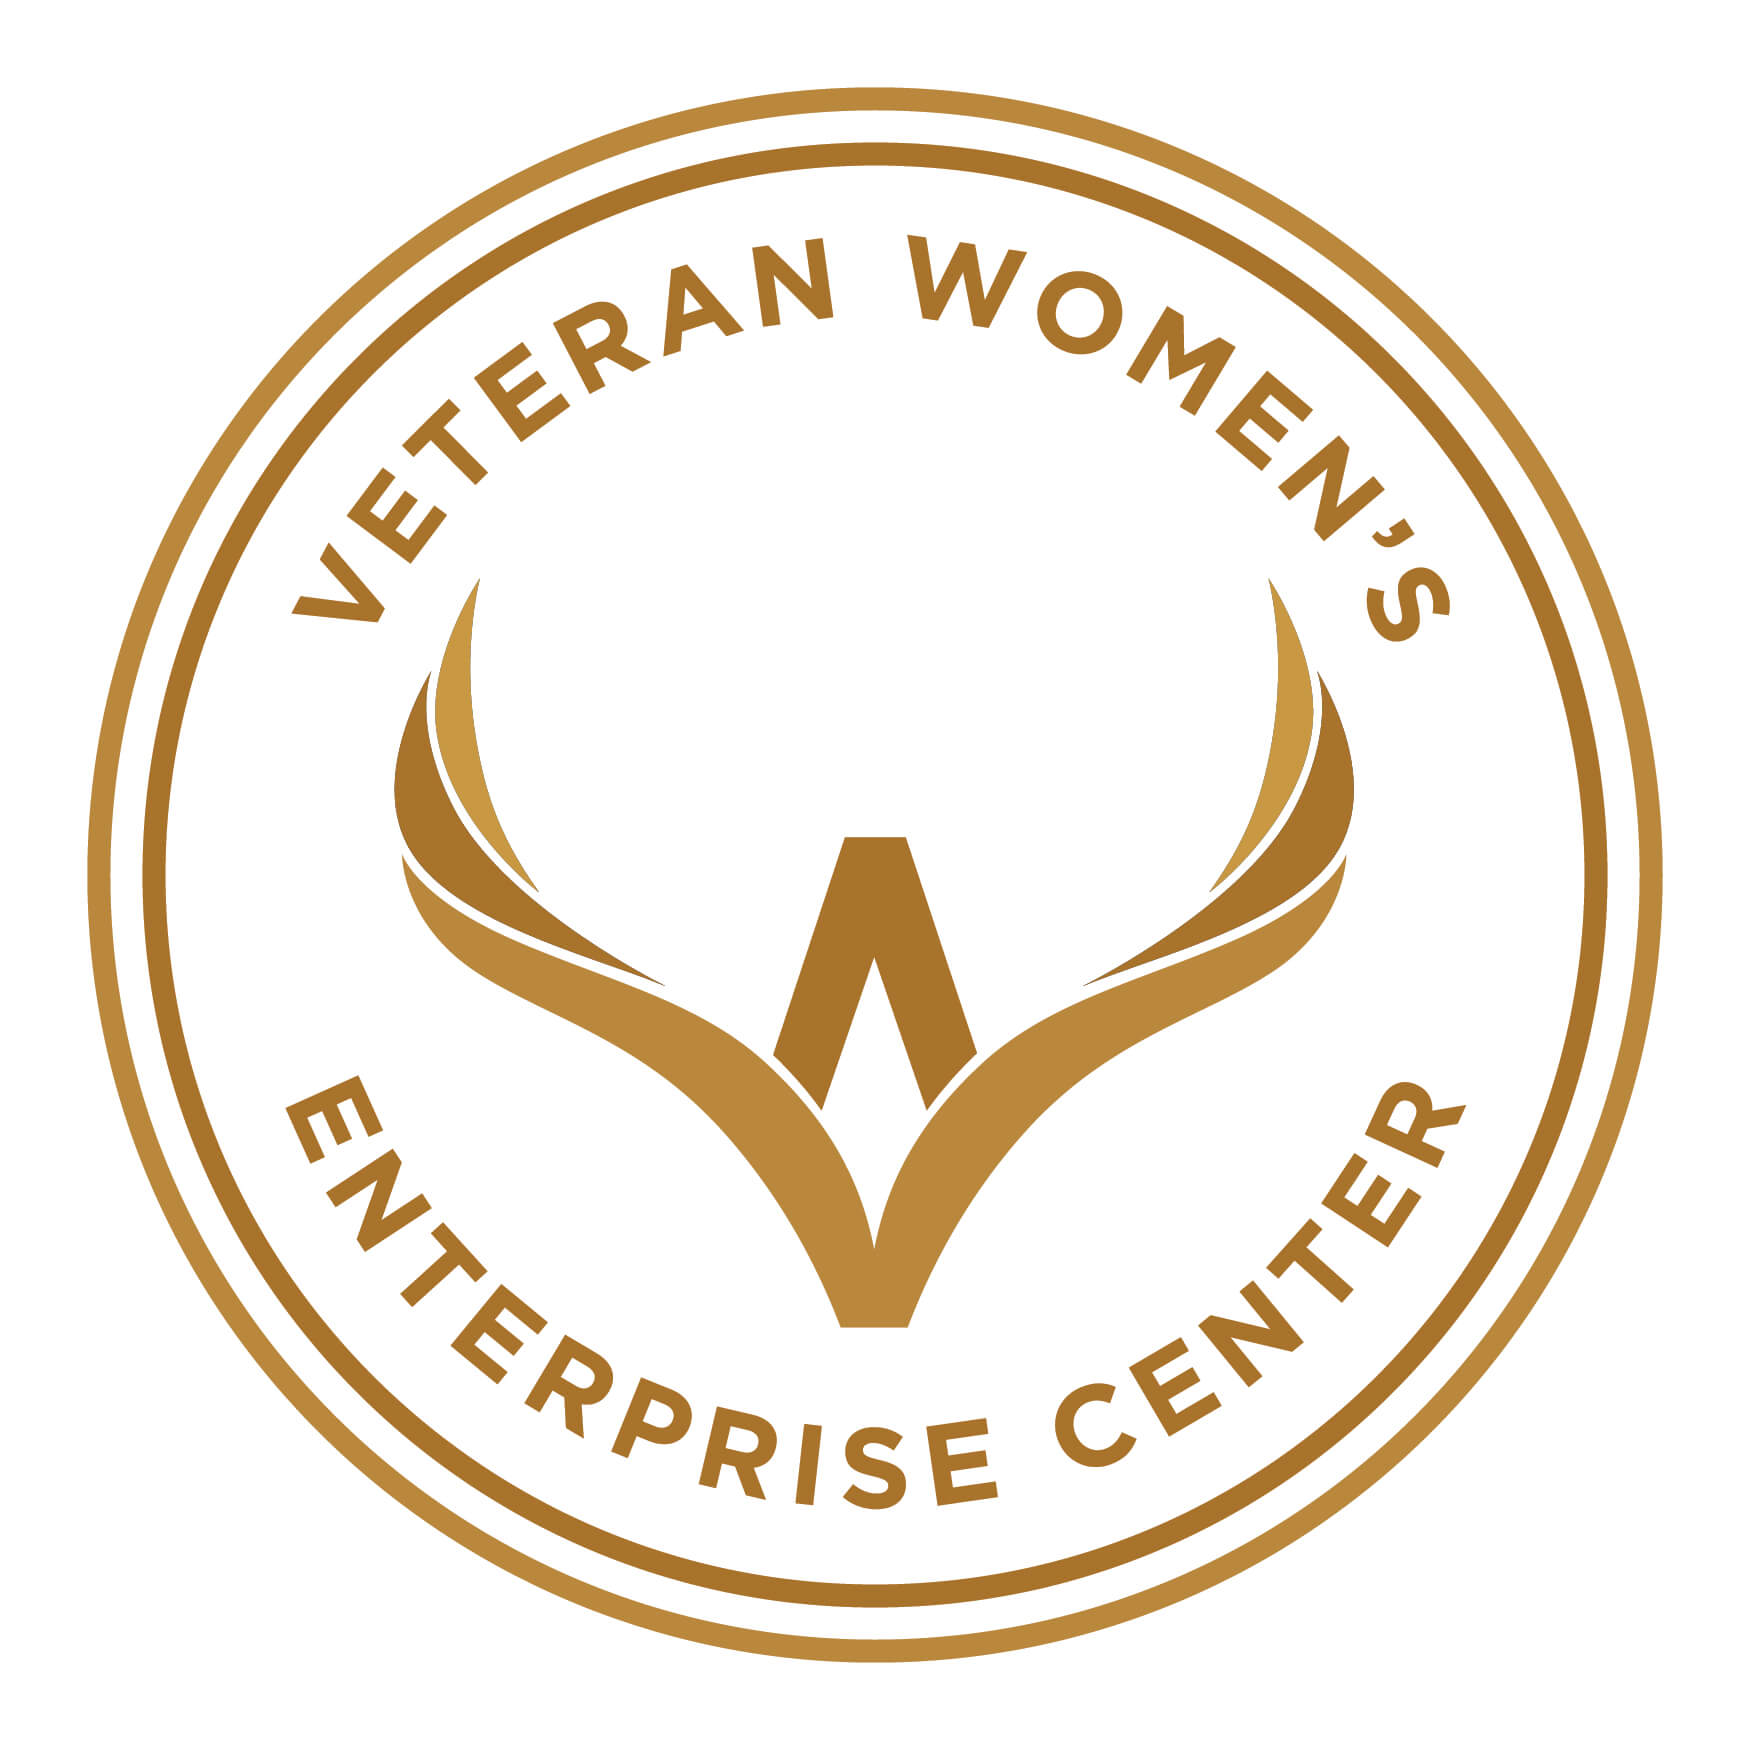 Veteran Women’s Enterprise Center